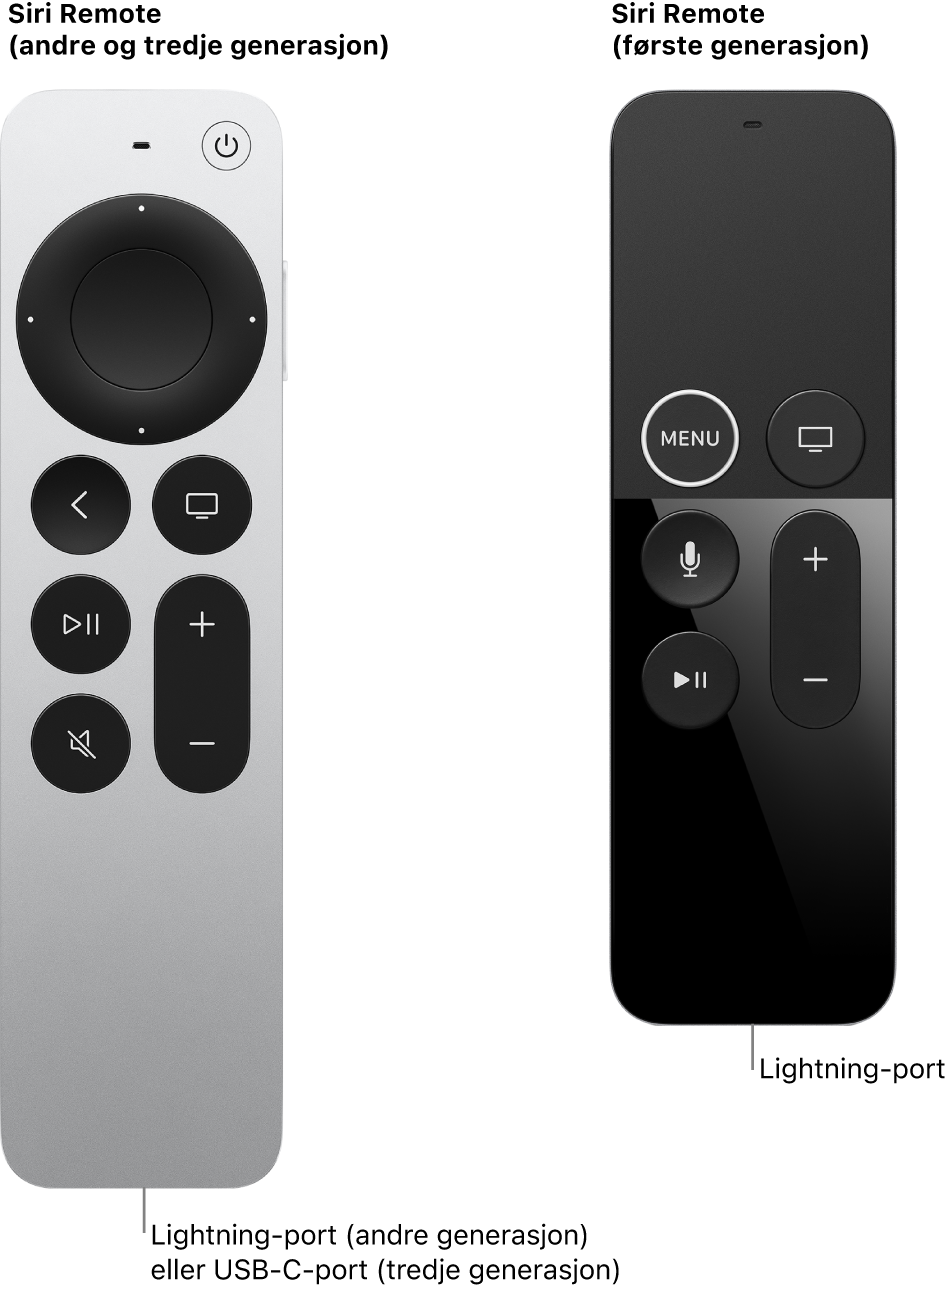 Bilde av Siri Remote (andre og tredje generasjon) og Siri Remote (første generasjon) som viser tilkoblingsporten